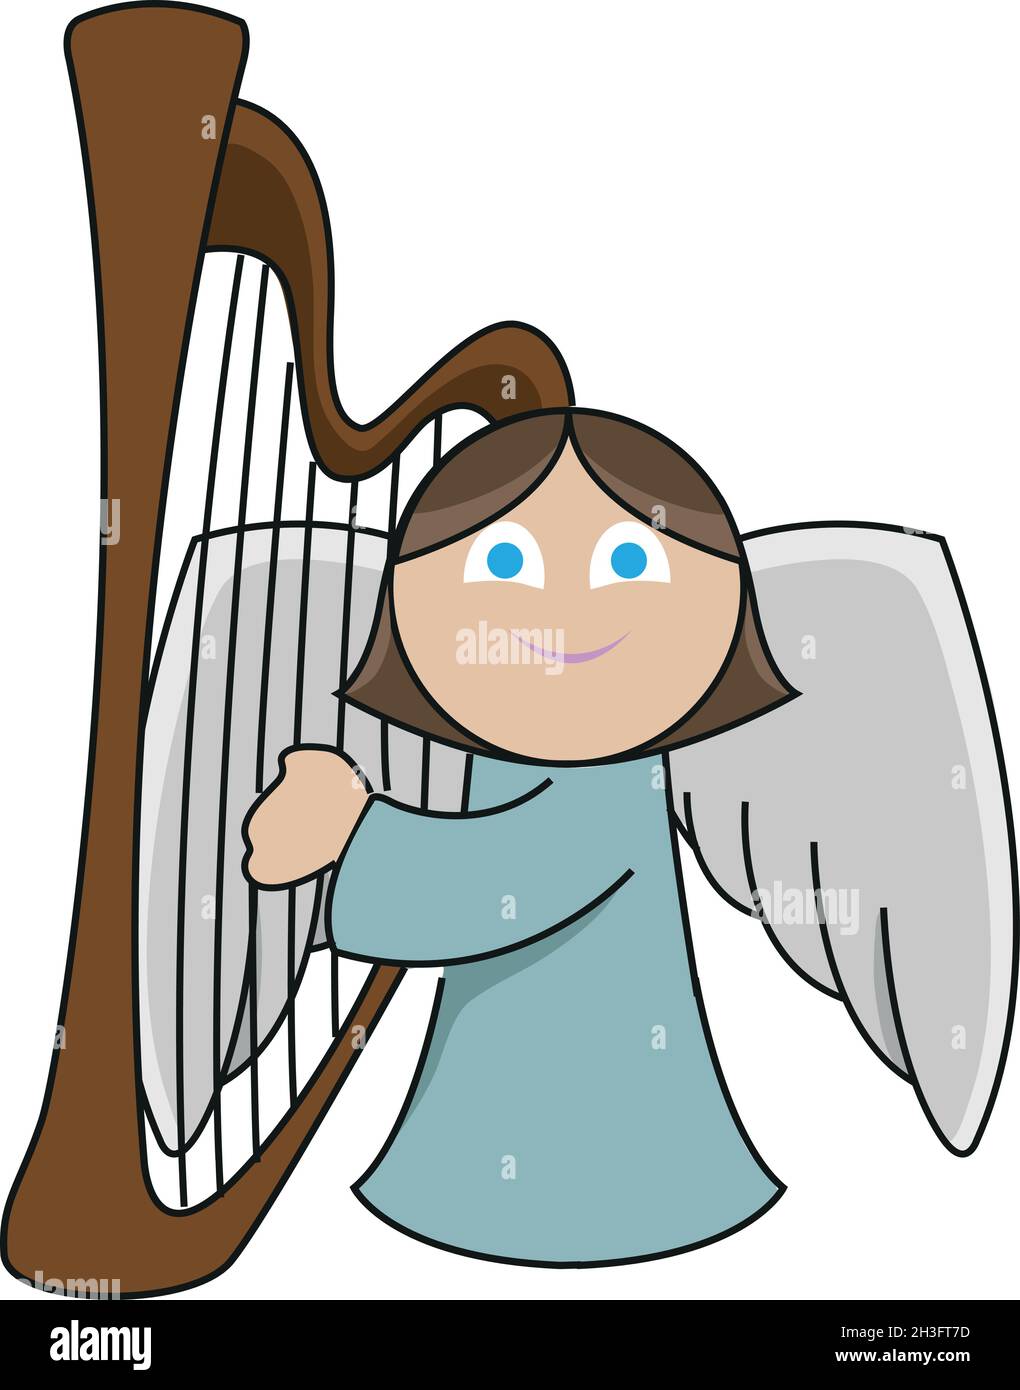 Un petit ange mignon joue la harpe avec emphatique Illustration de Vecteur